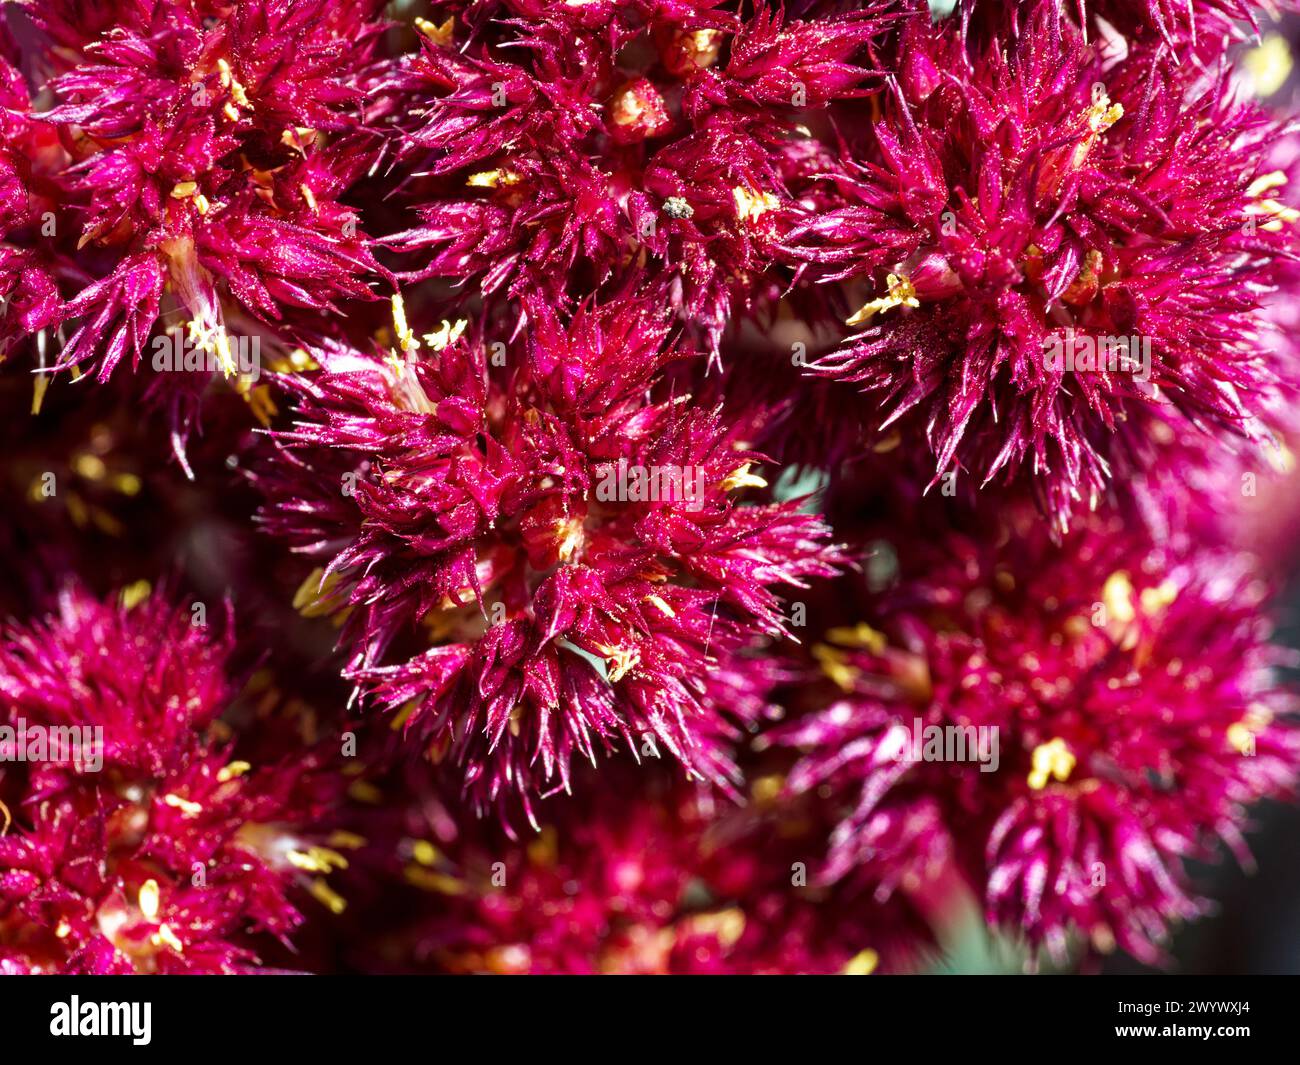 Ein detaillierter Blick auf leuchtend rote Blütenblätter, die dicht gepackt sind, bietet einen Einblick in komplizierte Designs, die die Natur herstellt. Stockfoto